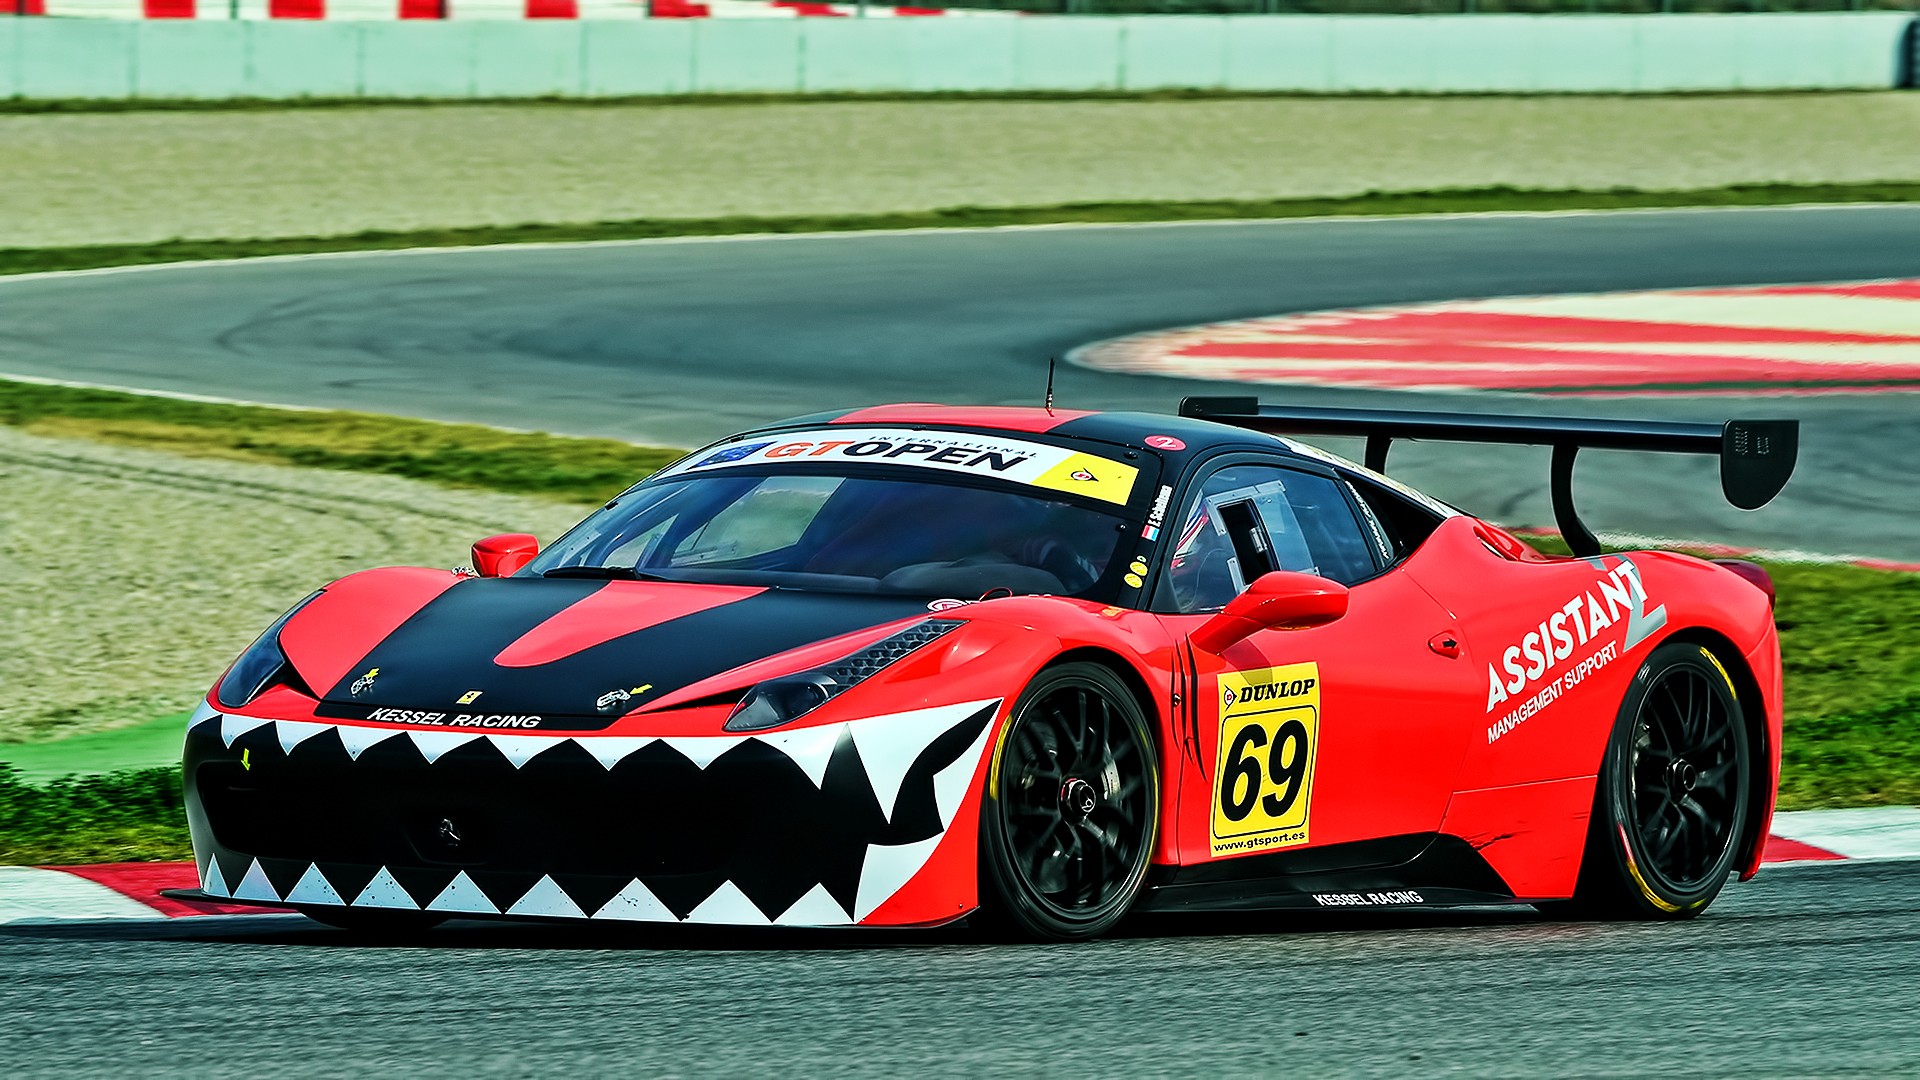 Ferrari 458 Italia GT3, Racing, Car, Race Cars, Ferrari ...